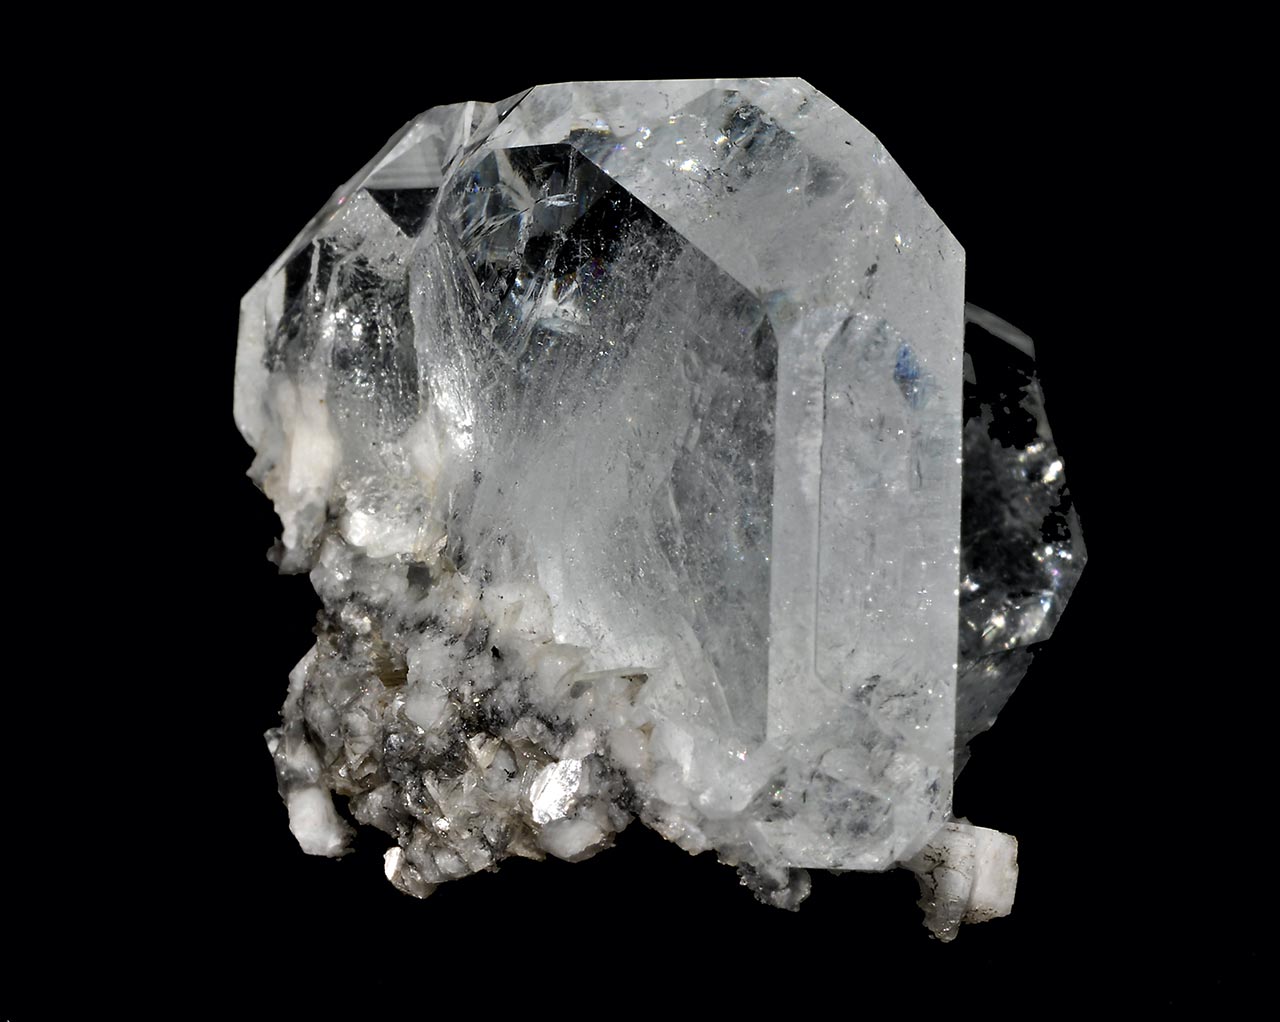 Ploché krystaly čirého berylu - goshenitu z lokality Pingwu beryl mine, Čína